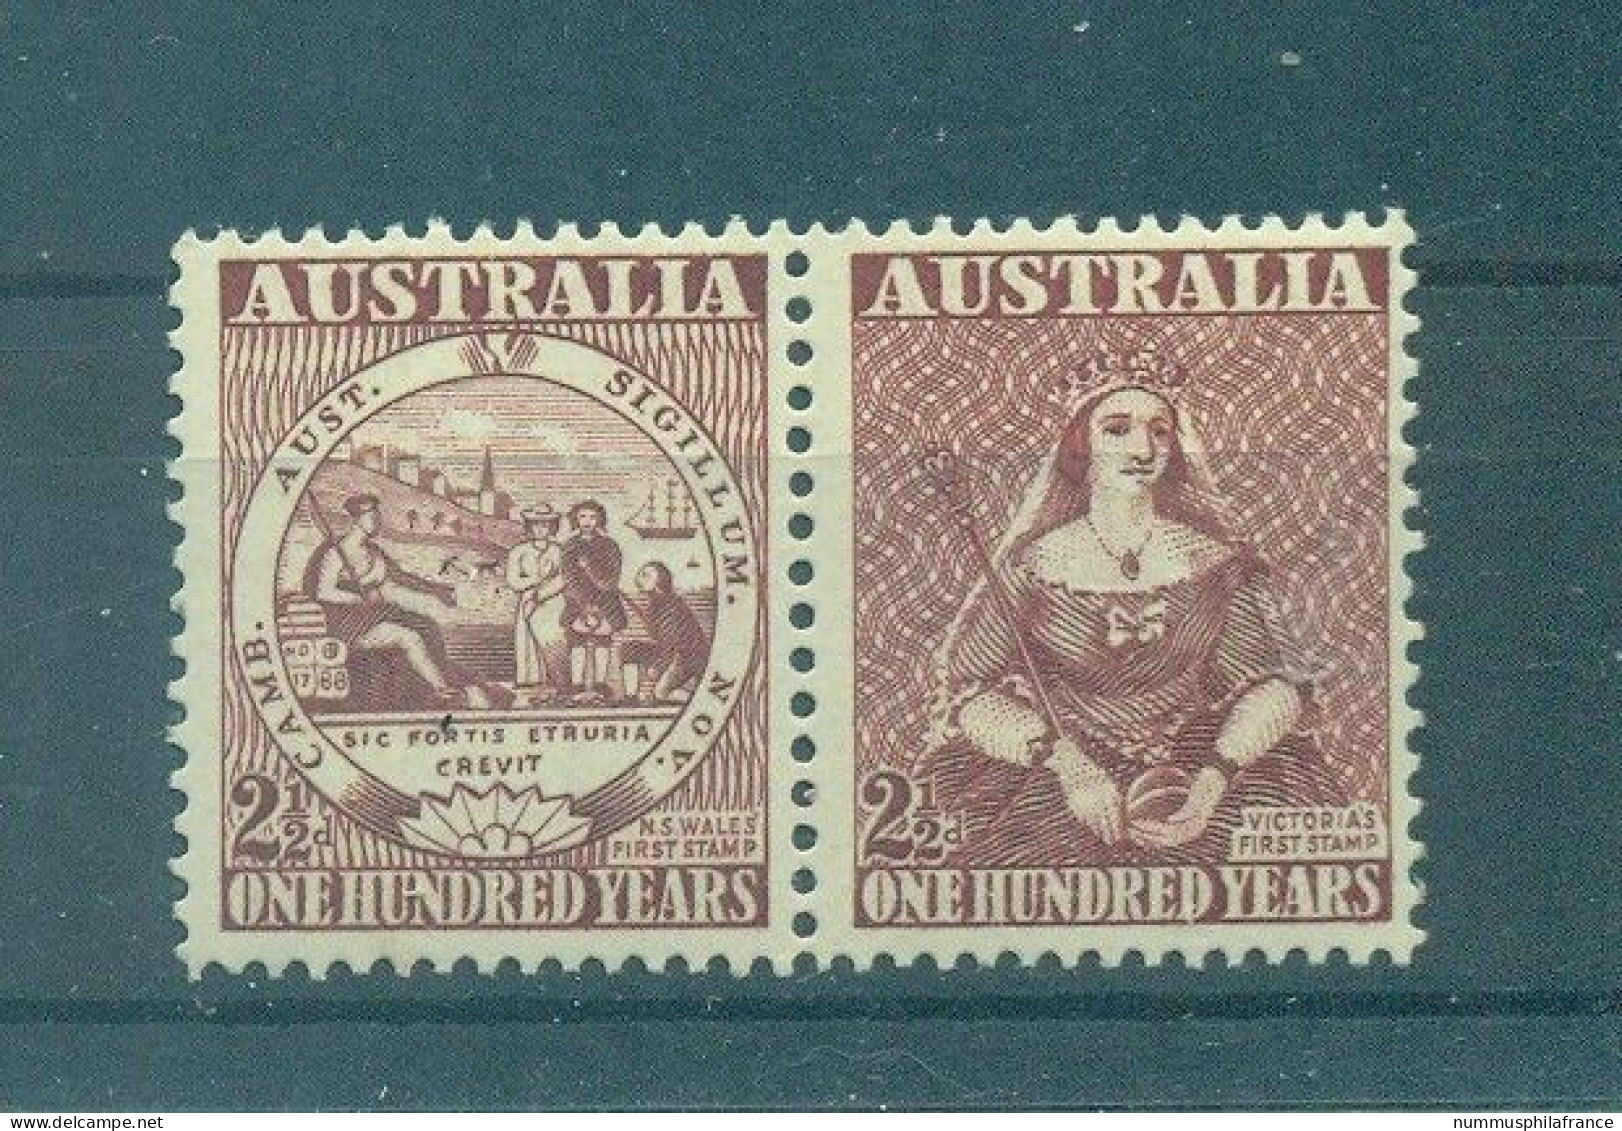 Australie 1950 - Y & T N. 175/76 - Timbre Australien (Michel N. 207/08) - Ongebruikt